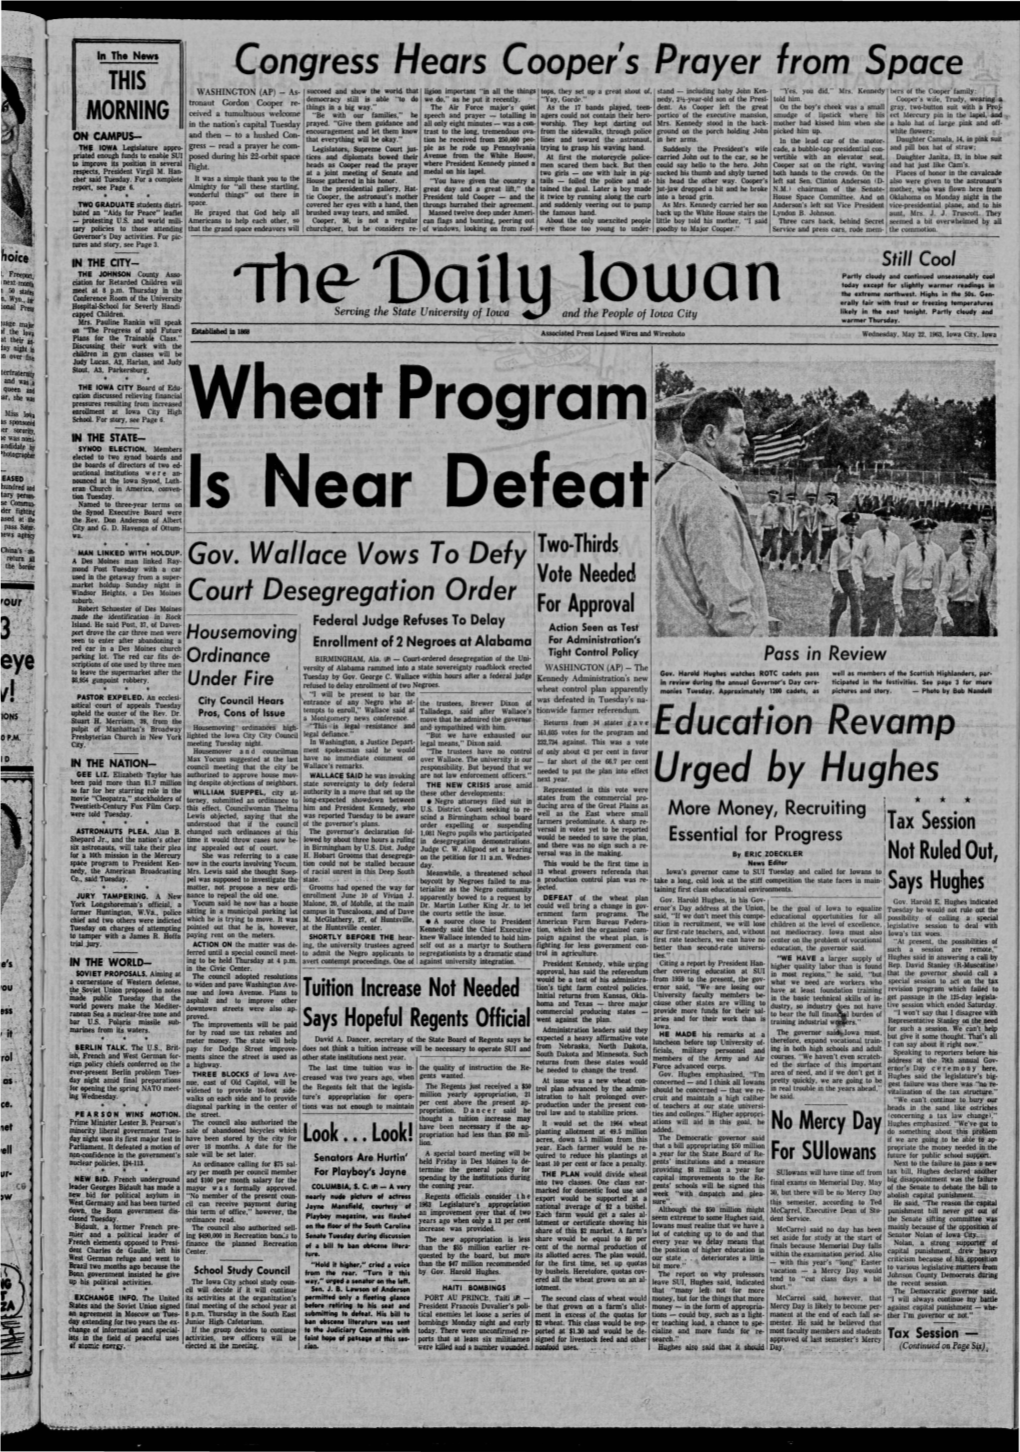 Daily Iowan (Iowa City, Iowa), 1963-05-22